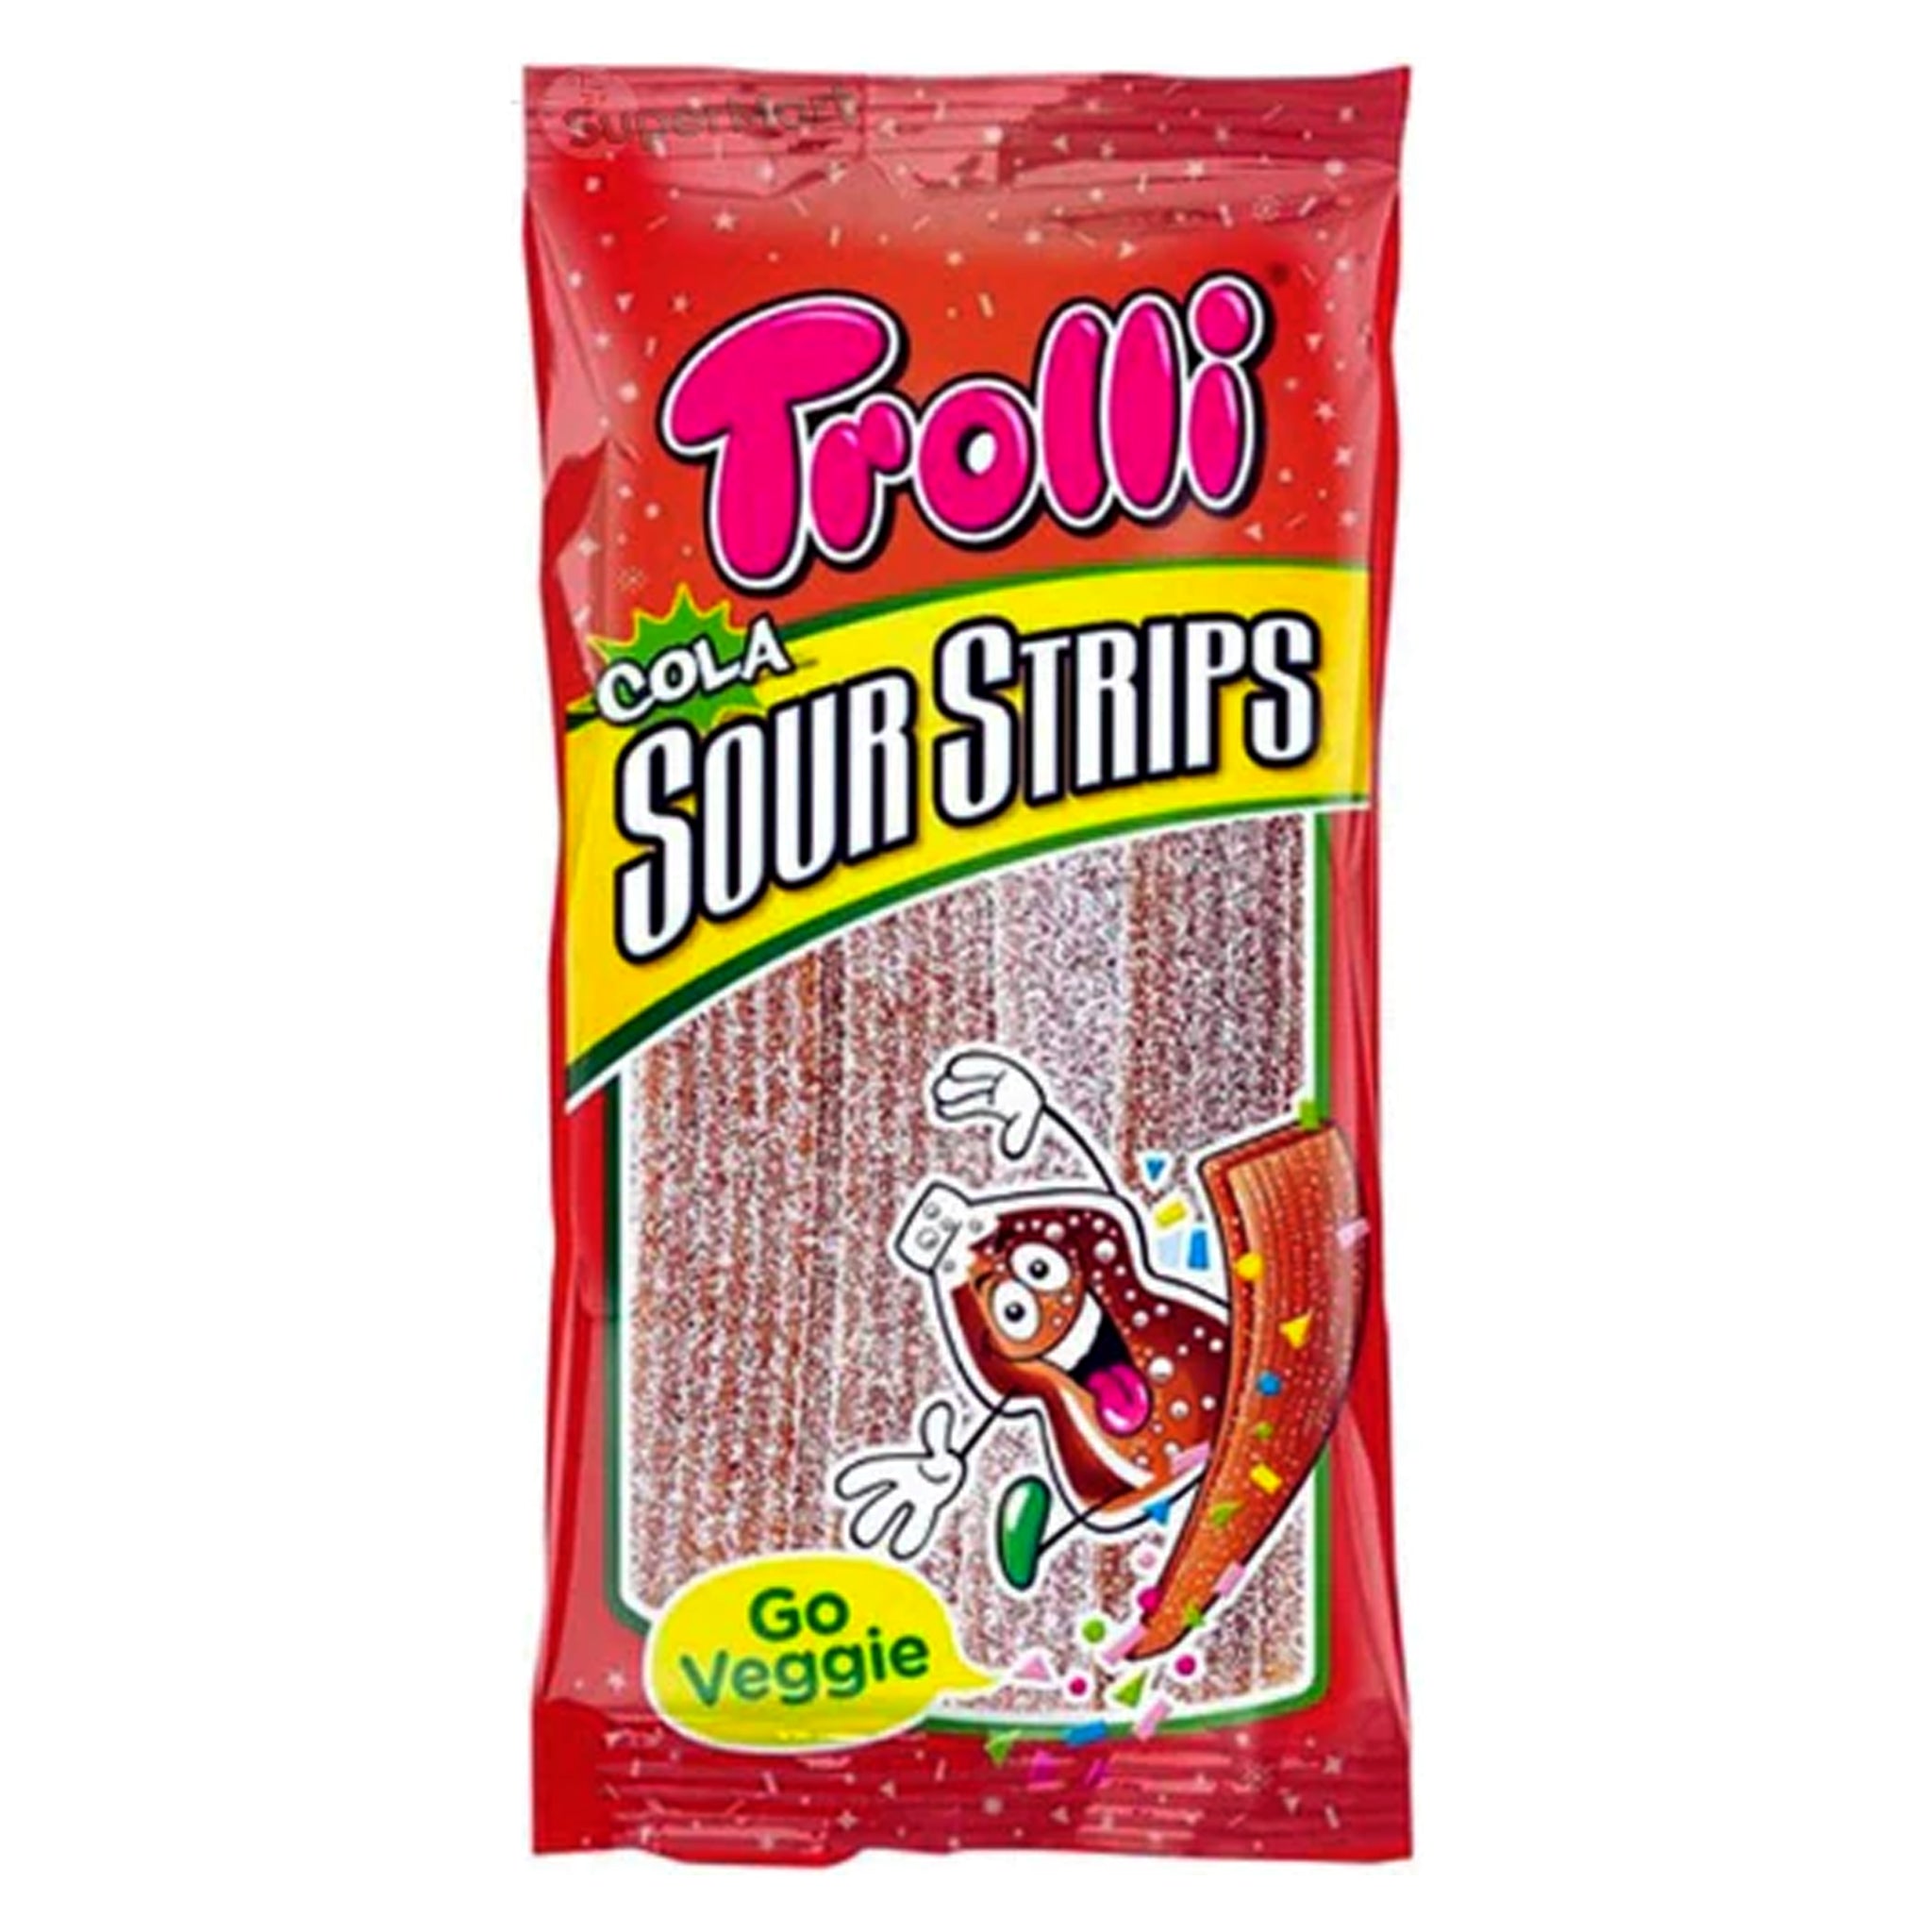 Trolli Sour Strips Cola משטחי גומי חמוצים בטעם קולה